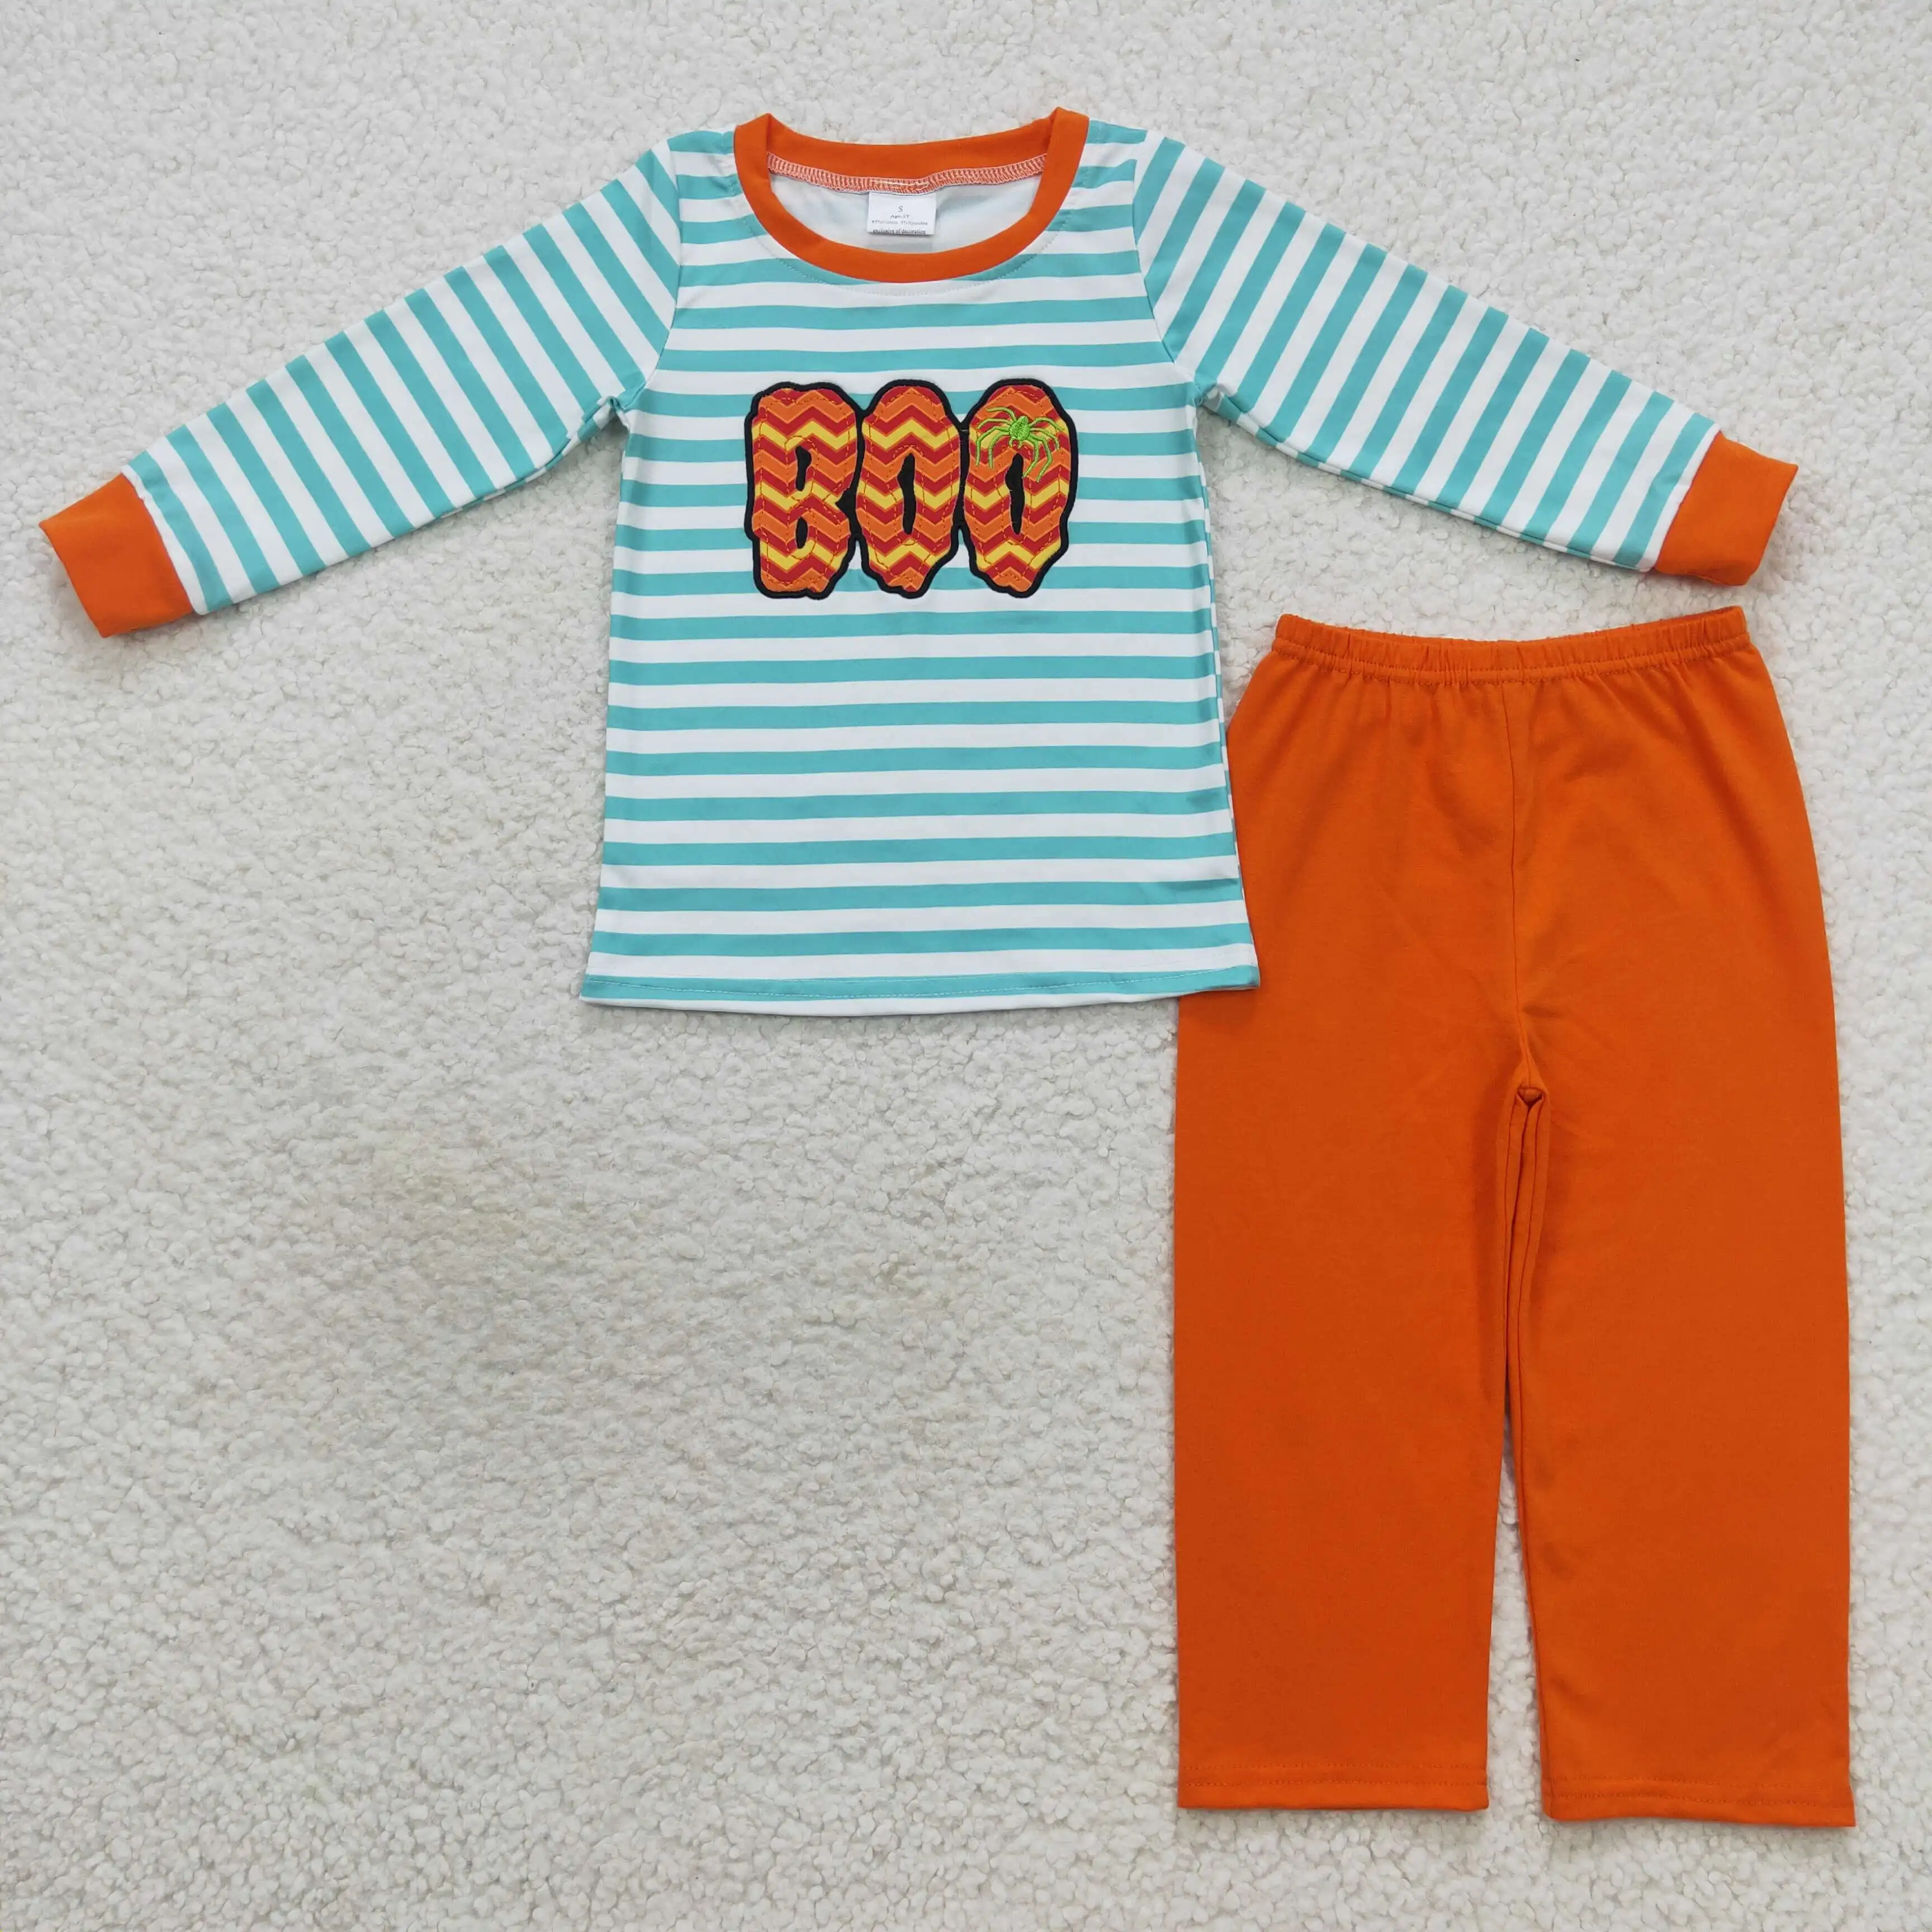 оптовая торговля для мальчиков вышитая надпись синяя и белая полосатая оранжевая одежда с длинными рукавами детская одежда горячая распродажа набор одежда для девочек и мальчиков